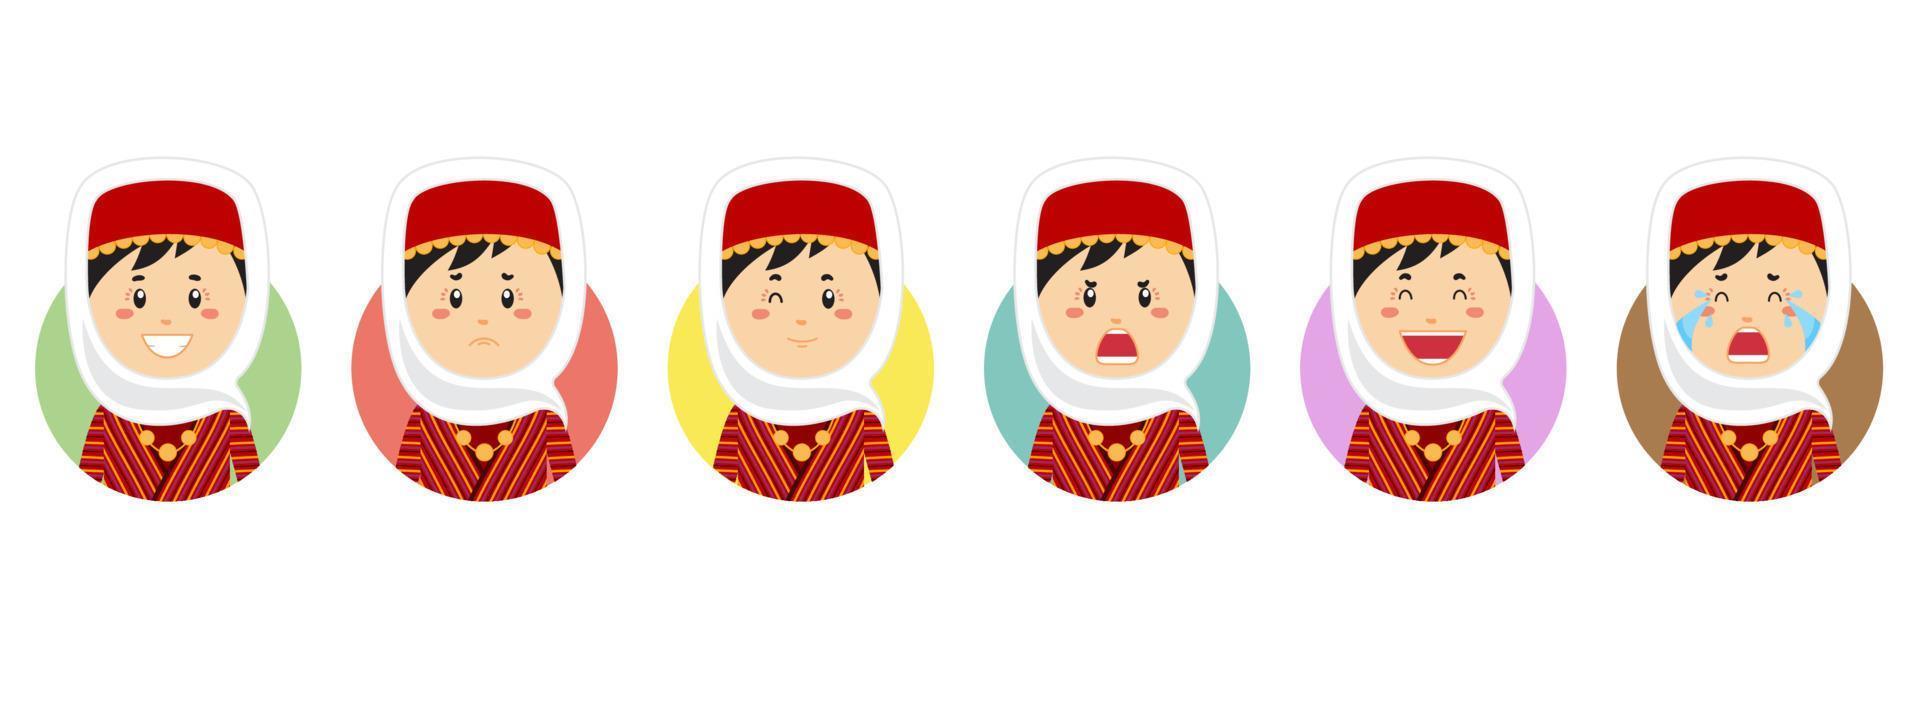 armenisk avatar med olika uttryck vektor